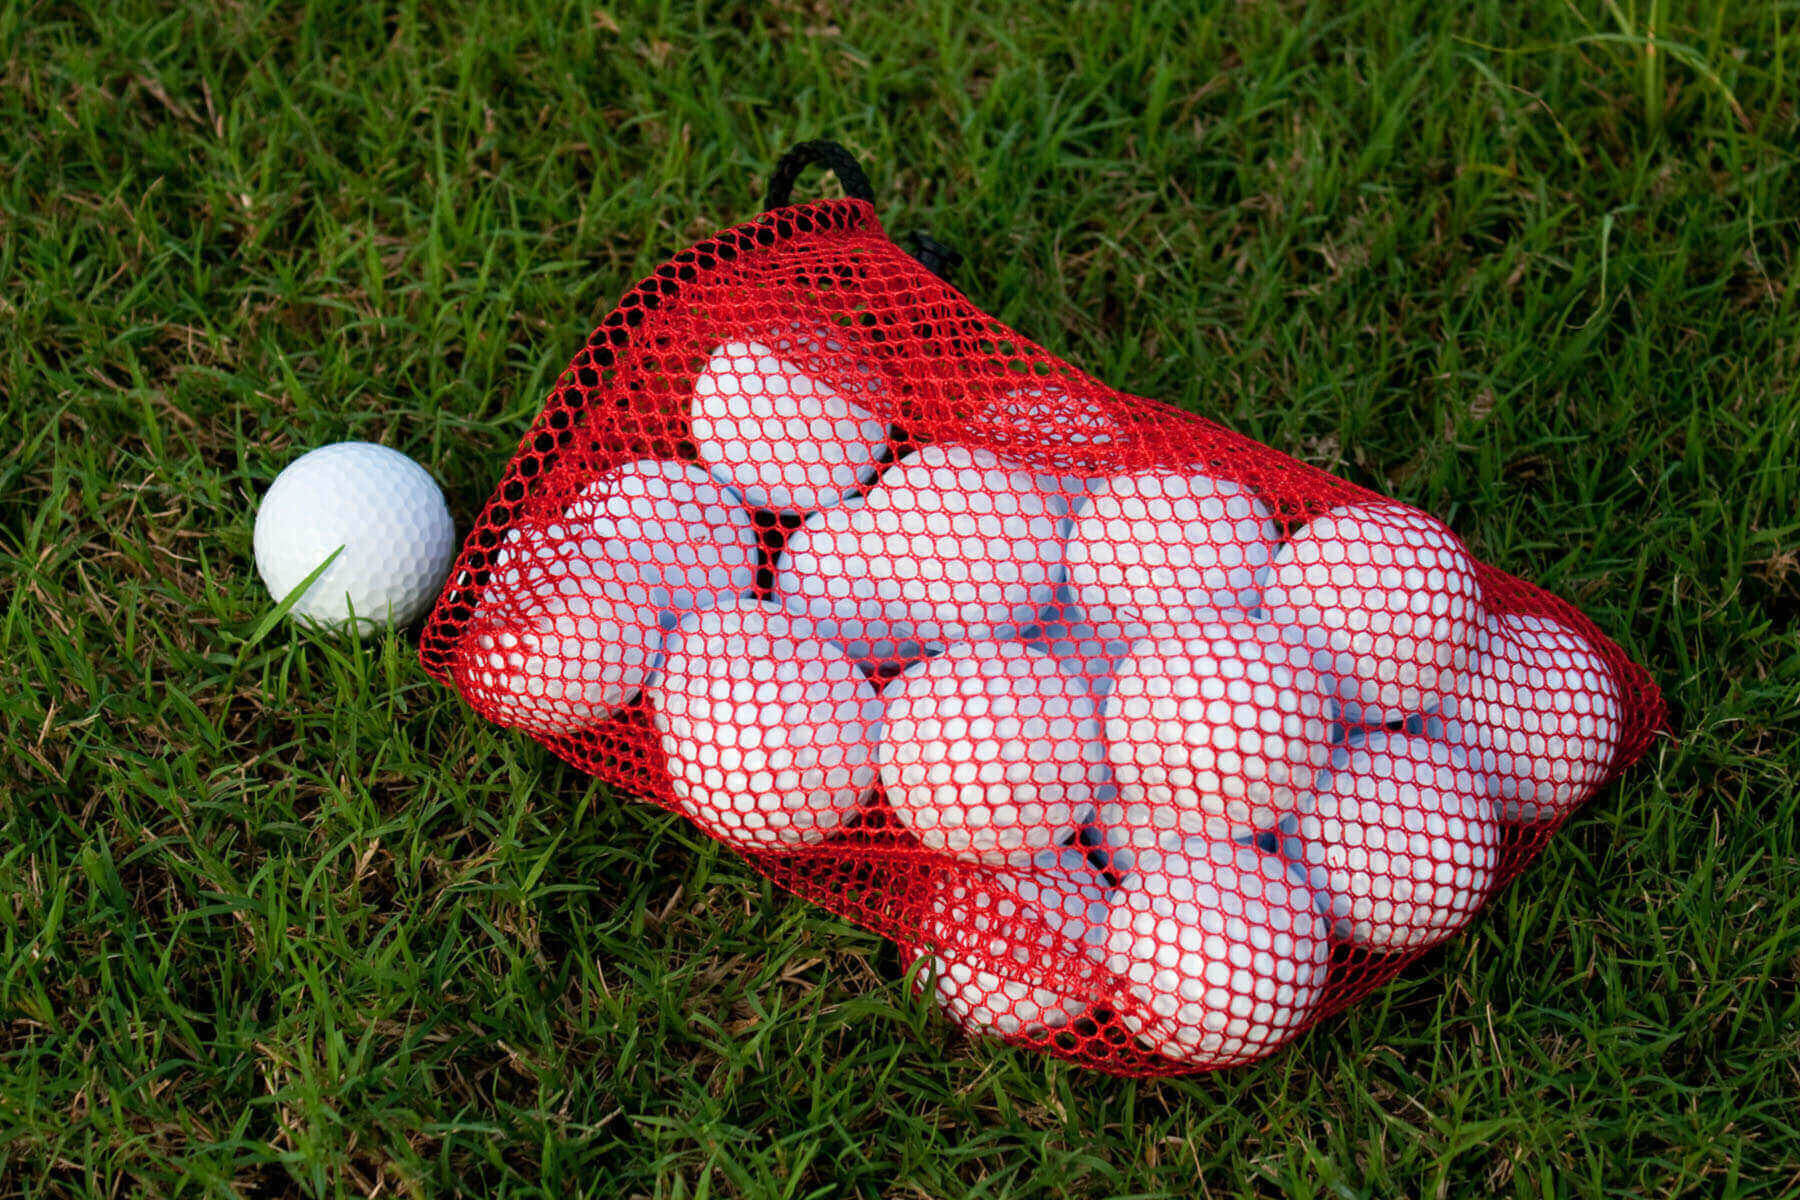 Golfbälle in einem Netz auf dem Gras